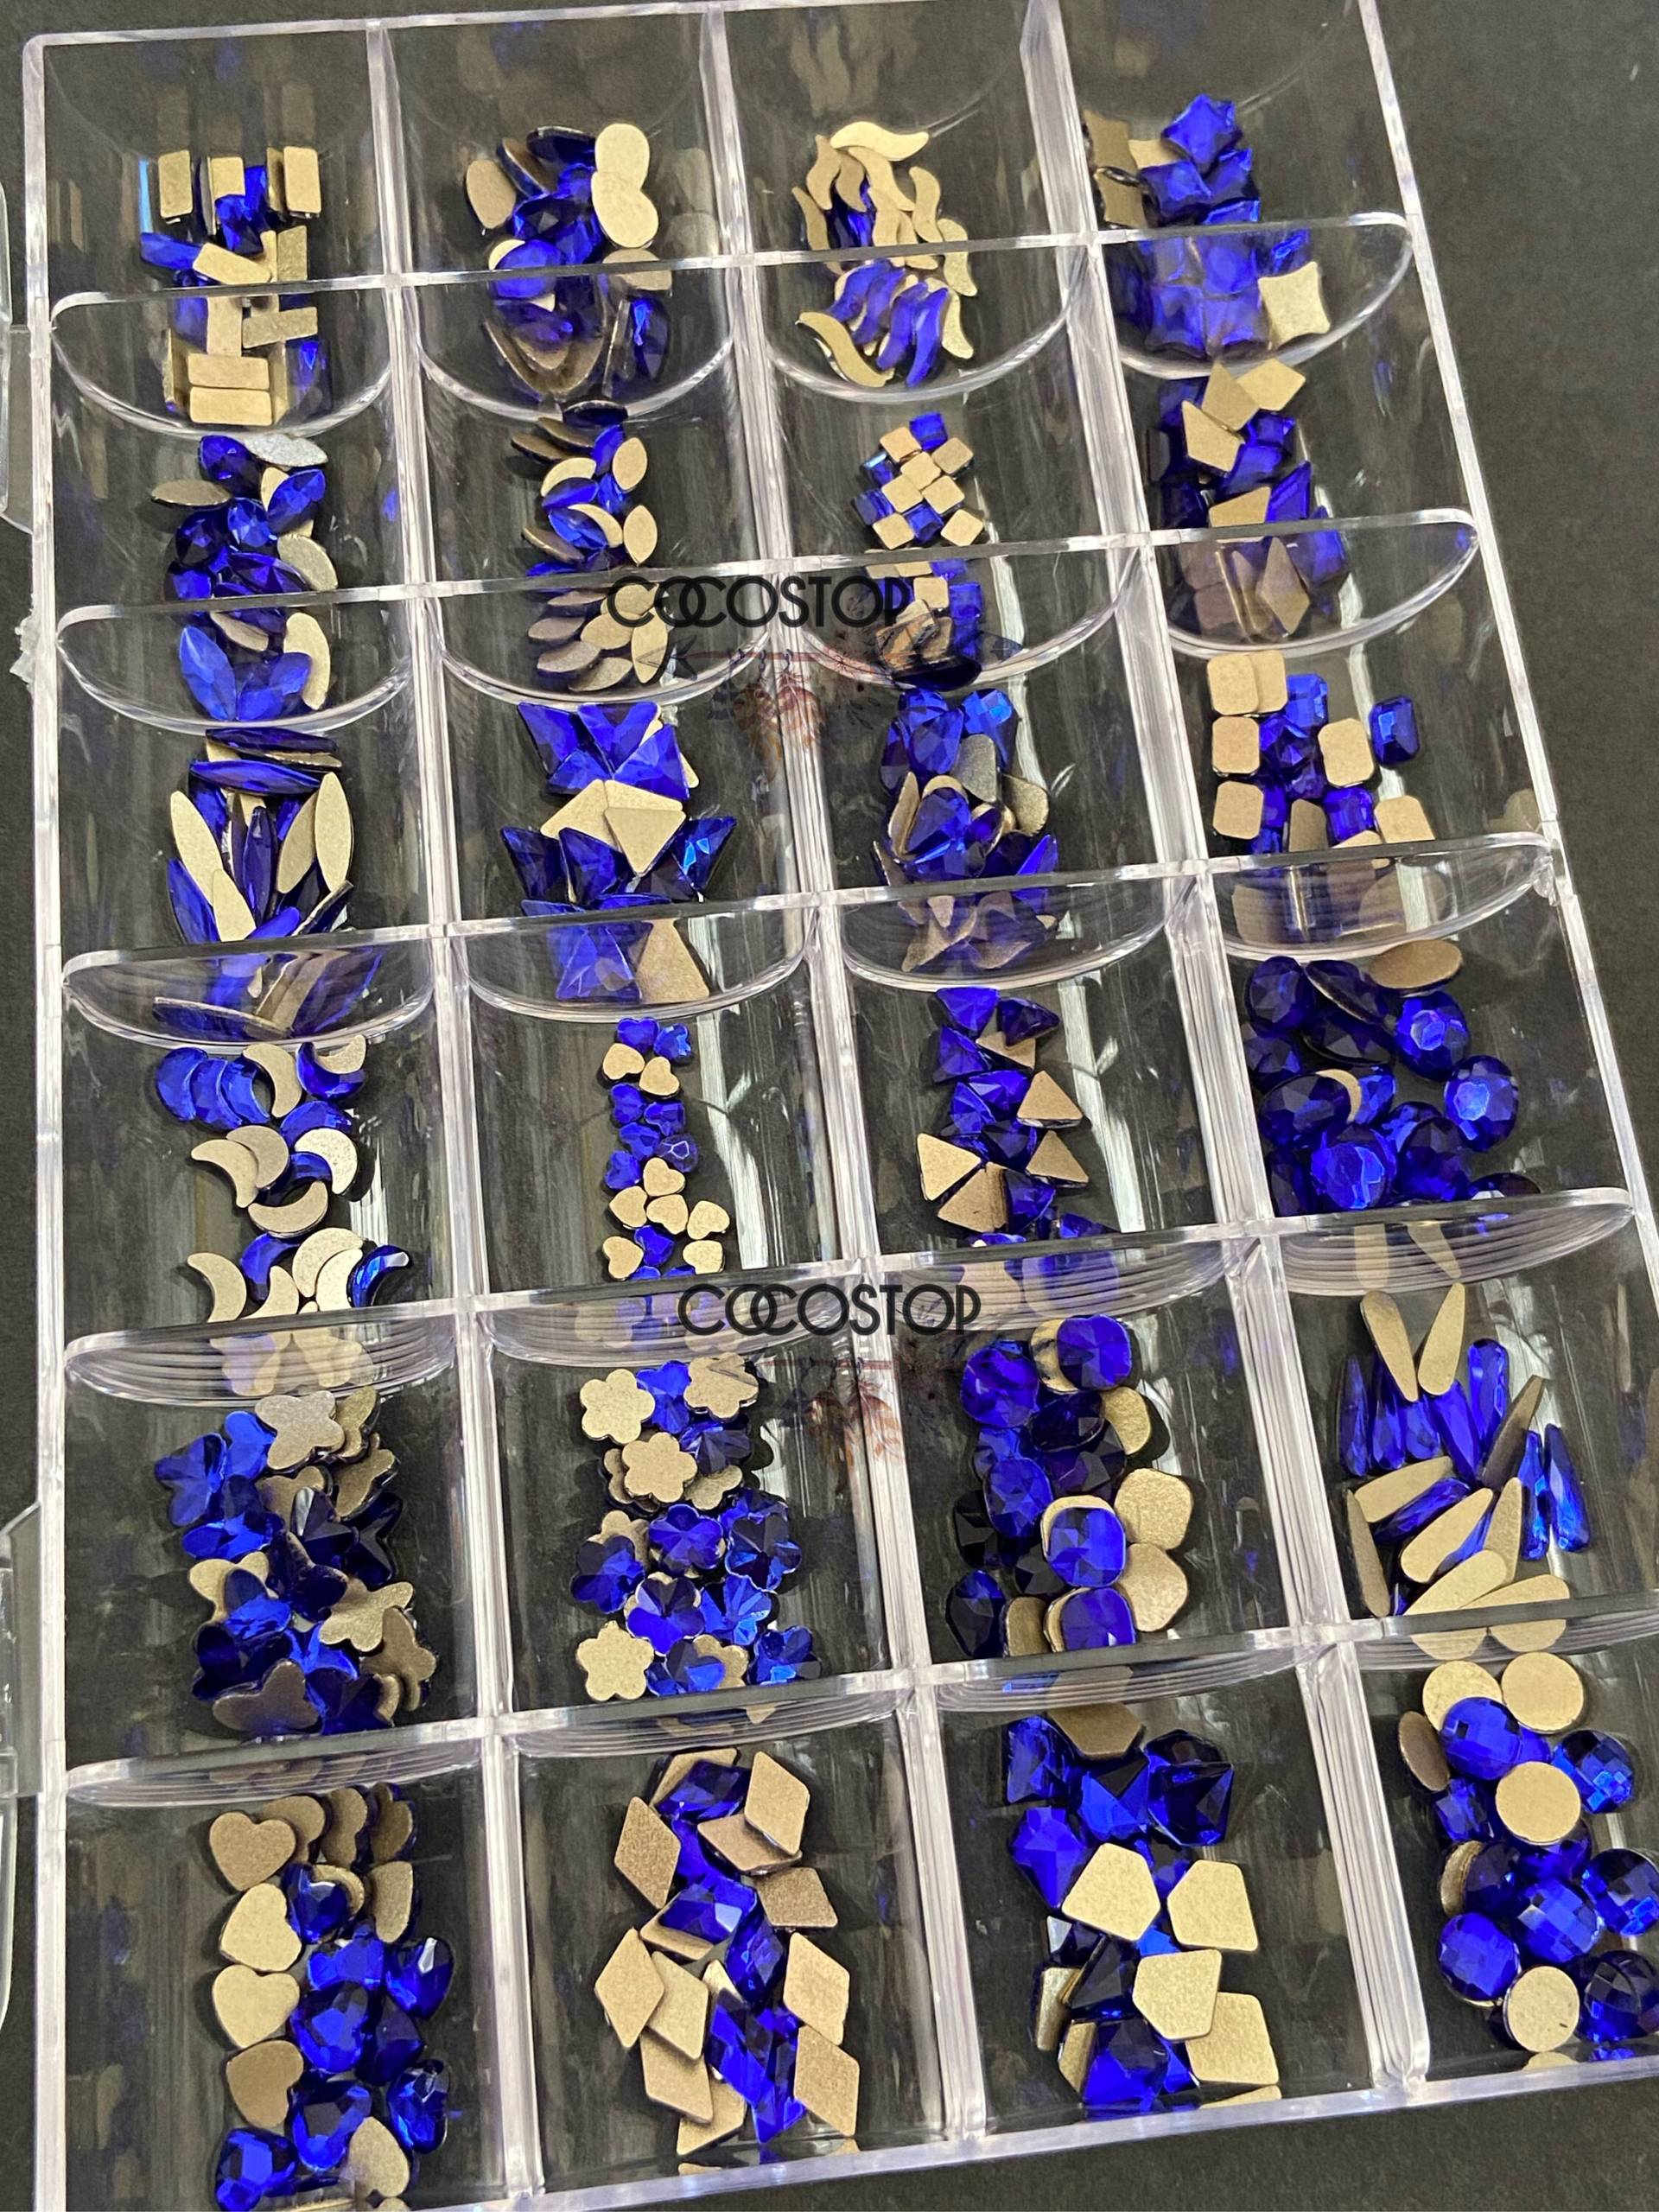 480 Stück Blaue Kristall Nagel Strass Box von CocoStop